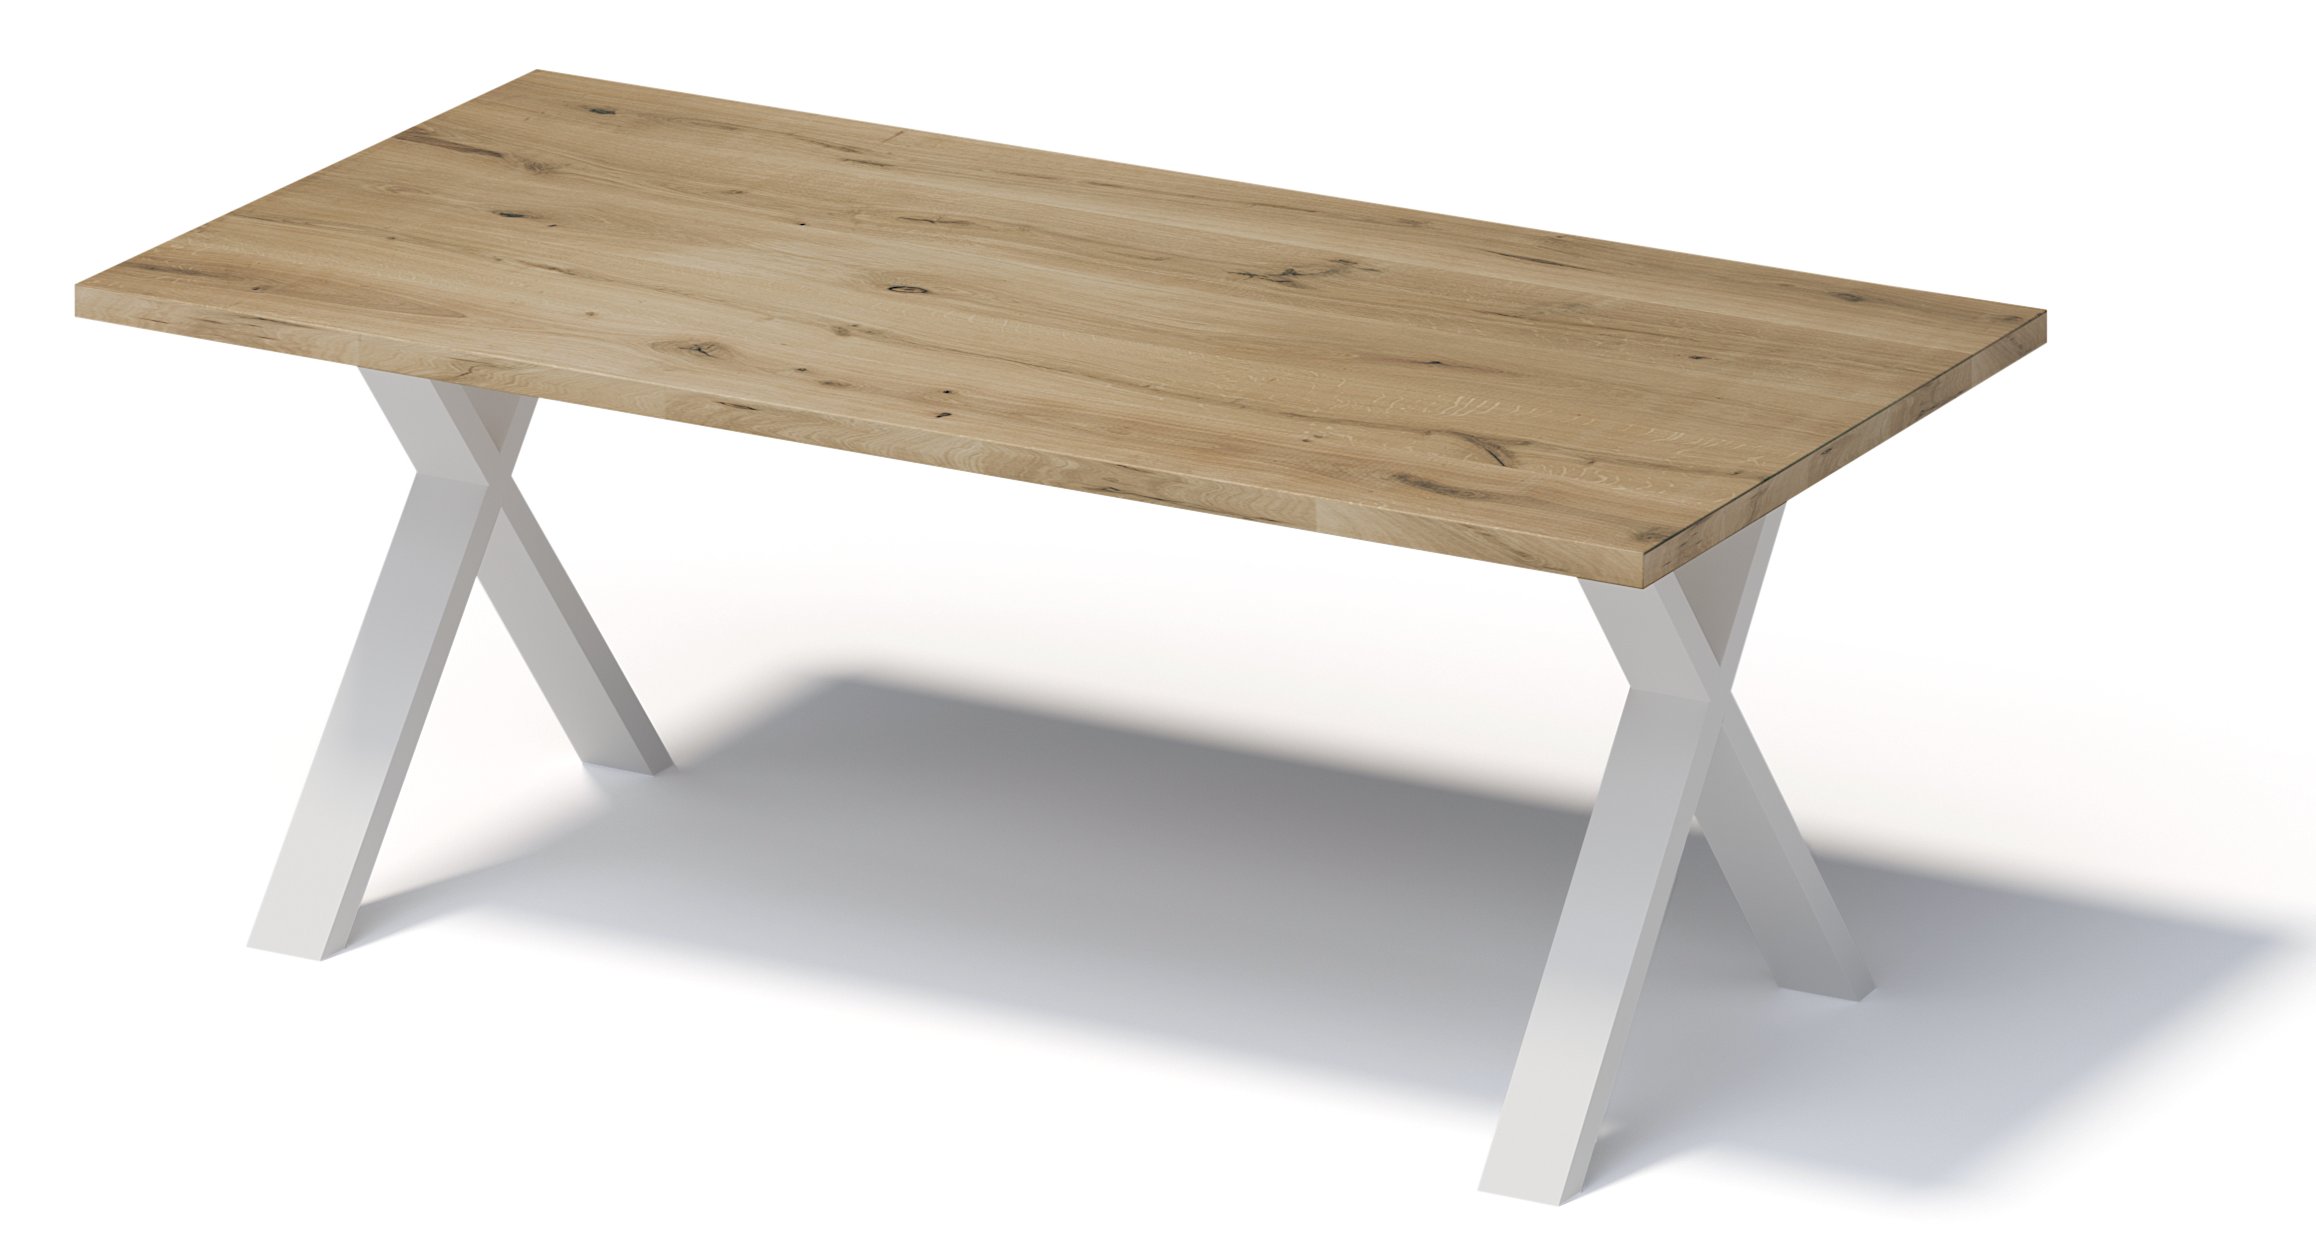 Besprechungstisch mit Eiche-Massivholz-Tischplatte 300 x 100 cm auf X-förmigen Stahlgestell reinweiß